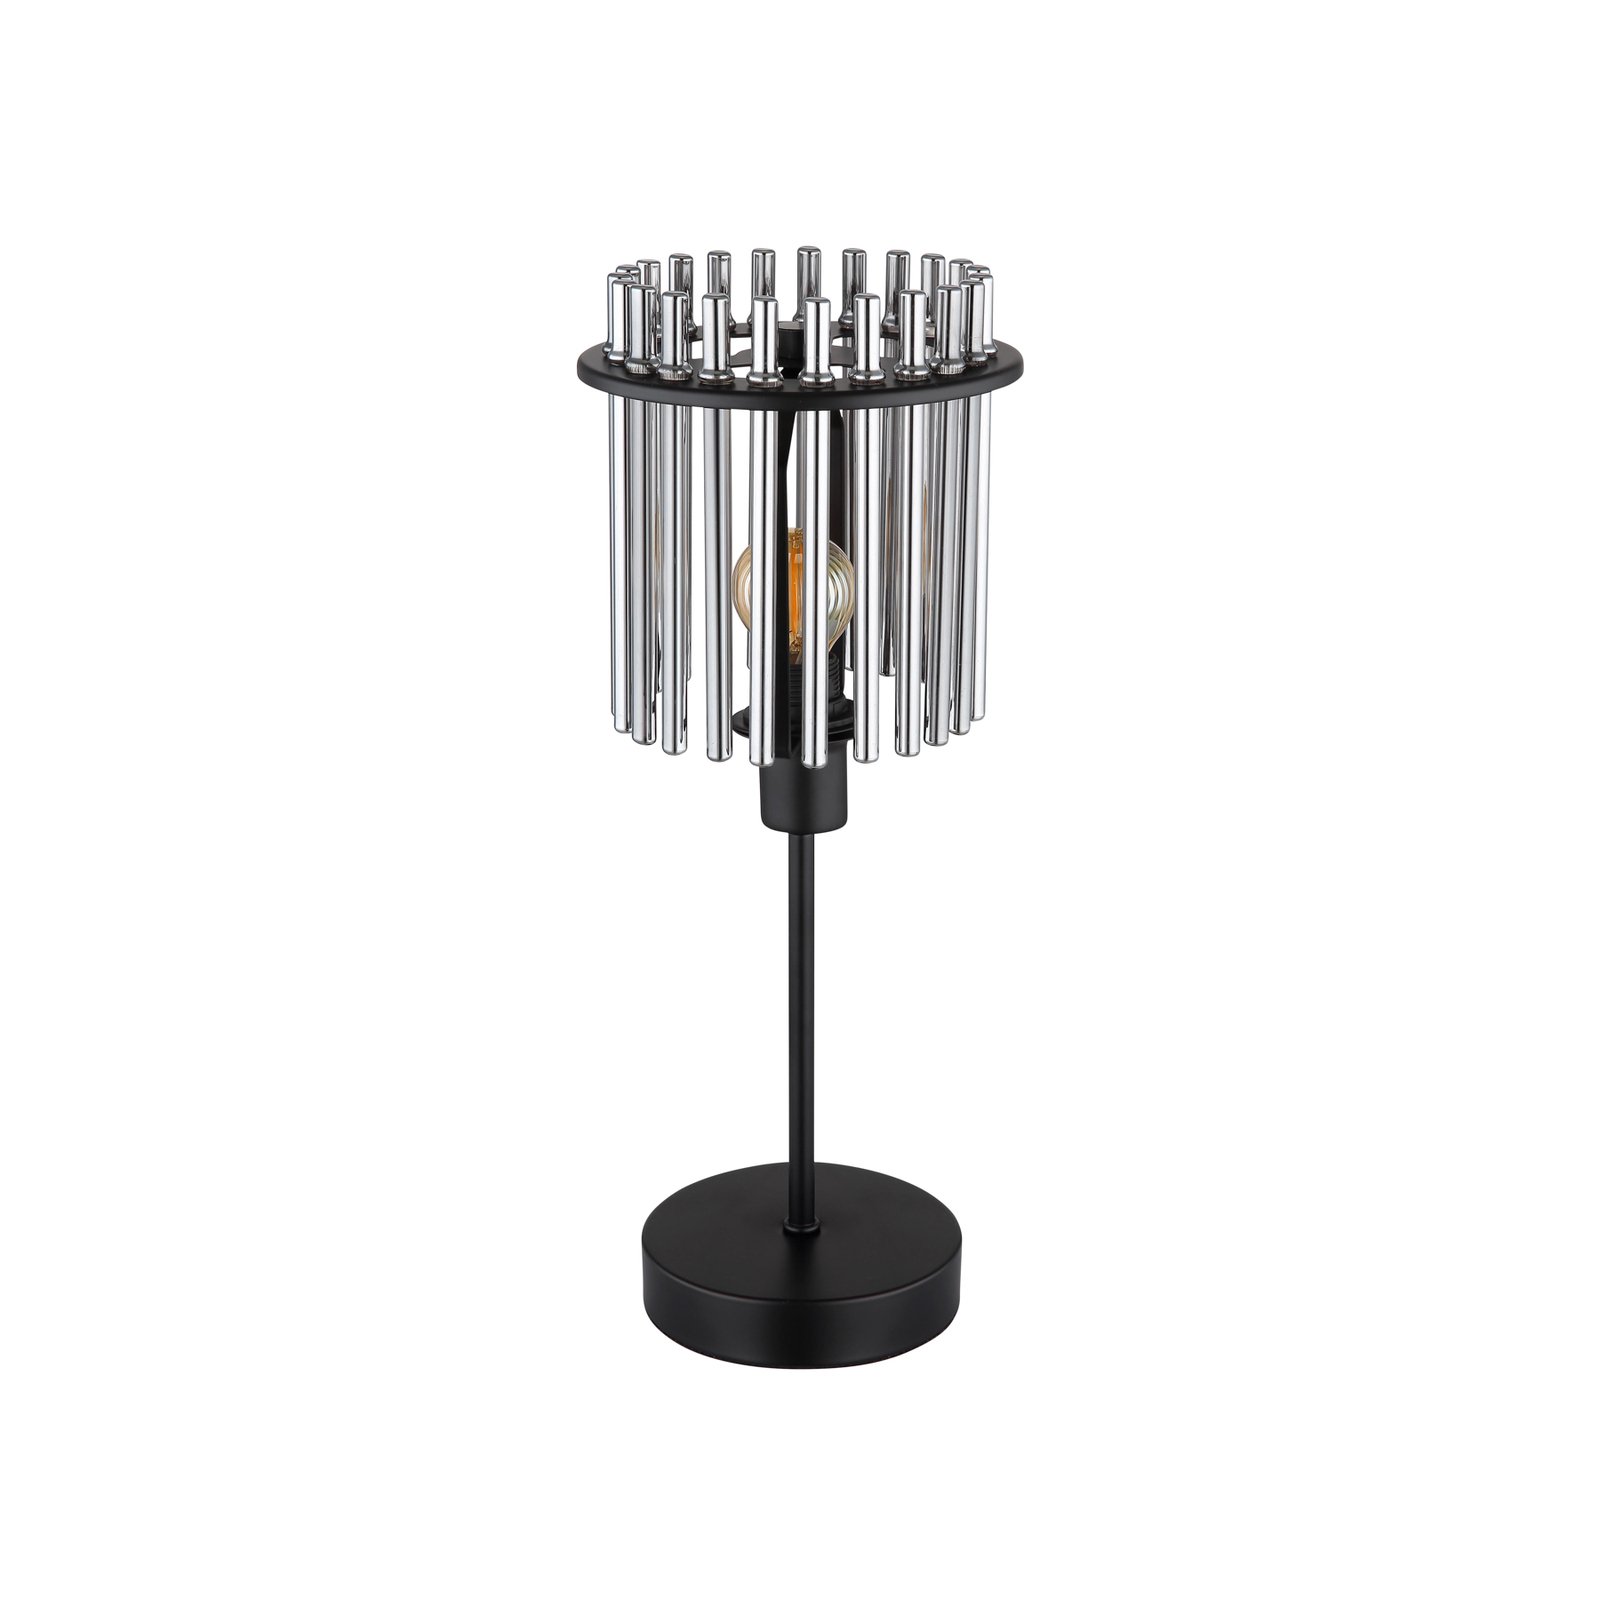 Gorley bordlampe, høyde 37,5 cm, røykgrått, glass/metall